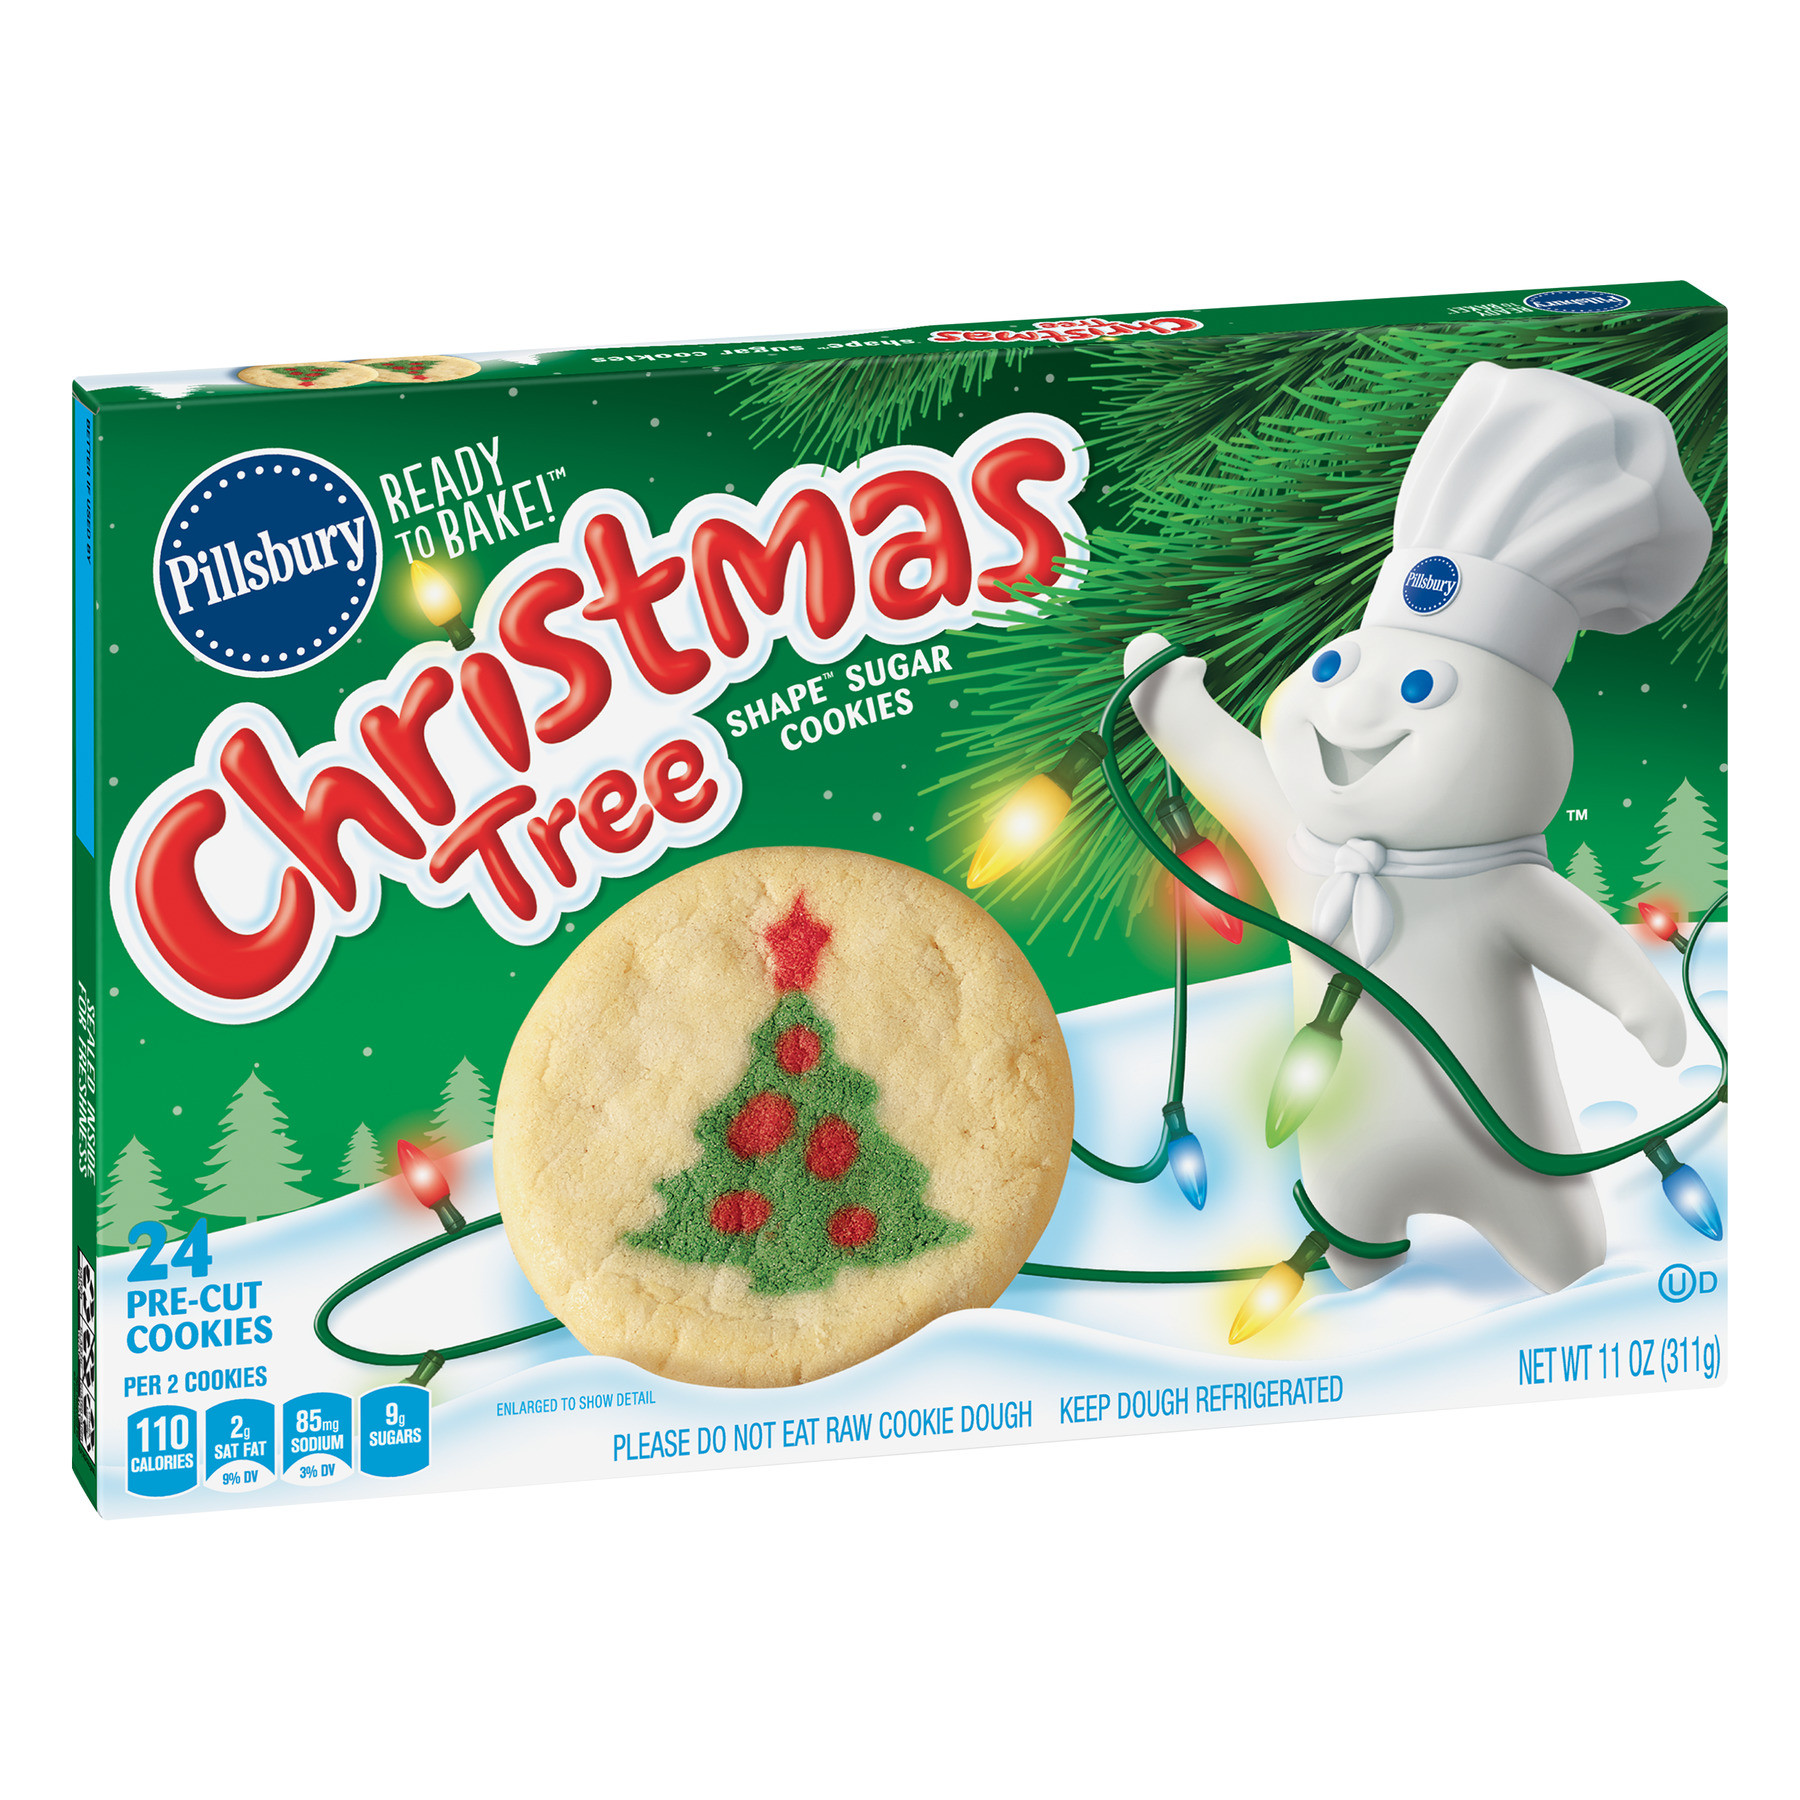 Christmas Cookies Movie 2019
 Pillsbury Ready to Bake Christmas Tree Shape Sugar